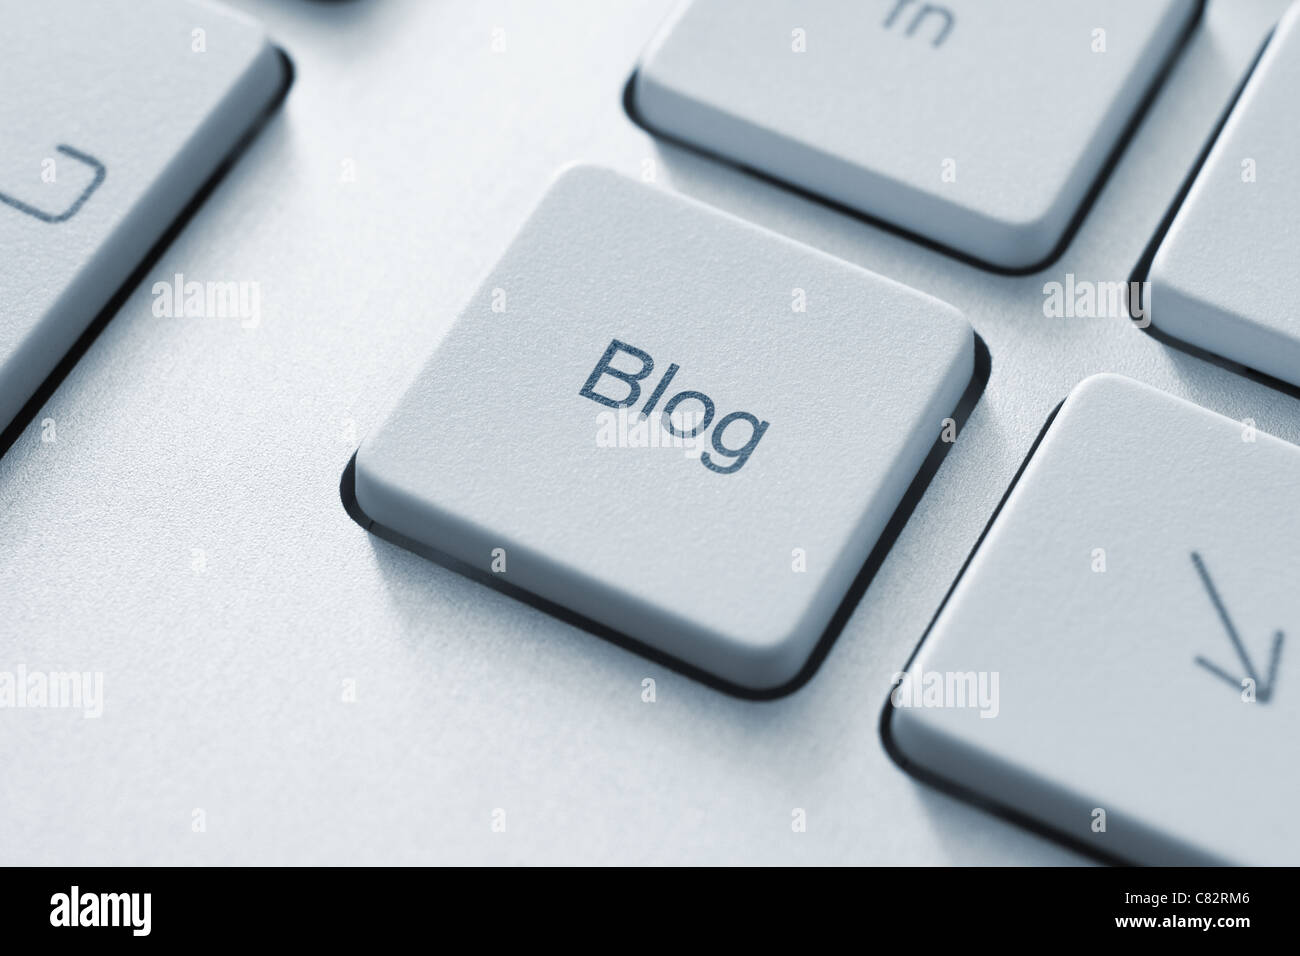 Blog botón en el teclado. Imagen de tonos. Foto de stock